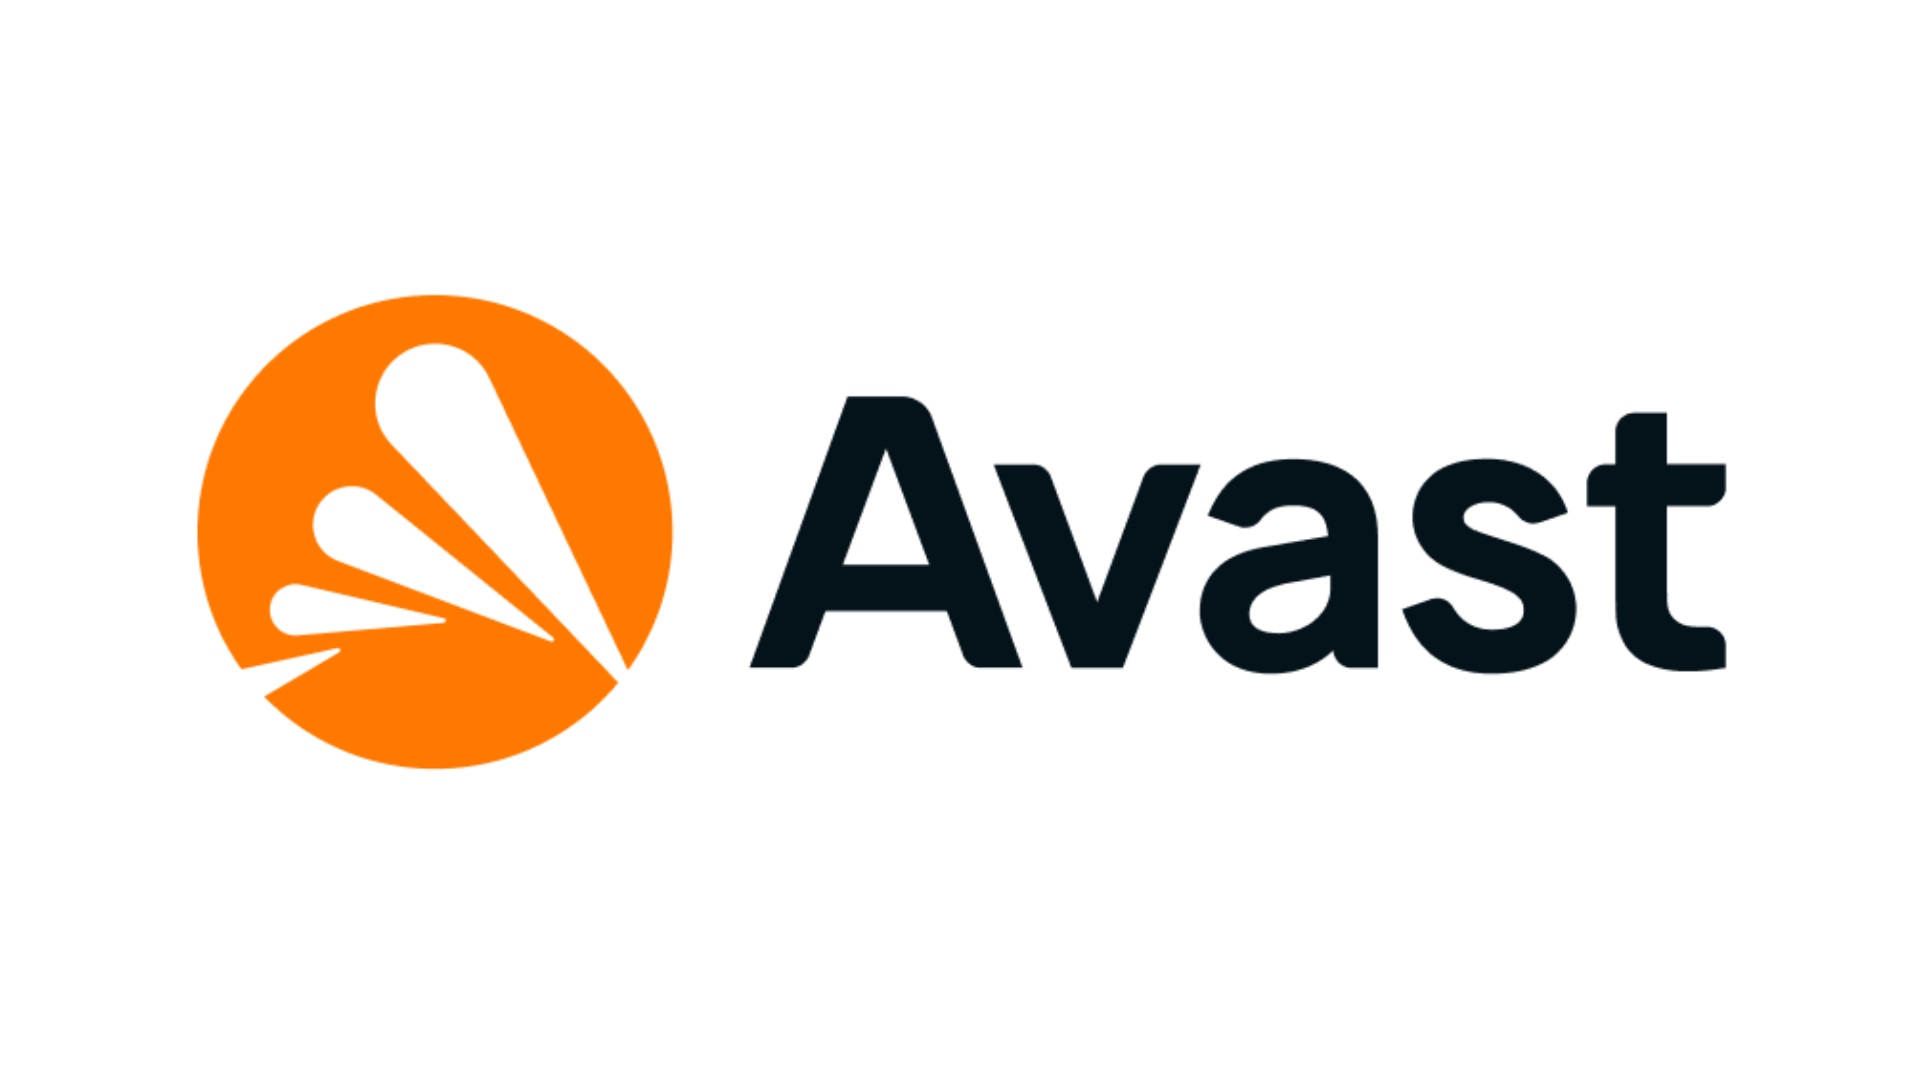 Antivirus ที่ดีที่สุด: Avast รูปภาพแสดงโลโก้ของ บริษัท